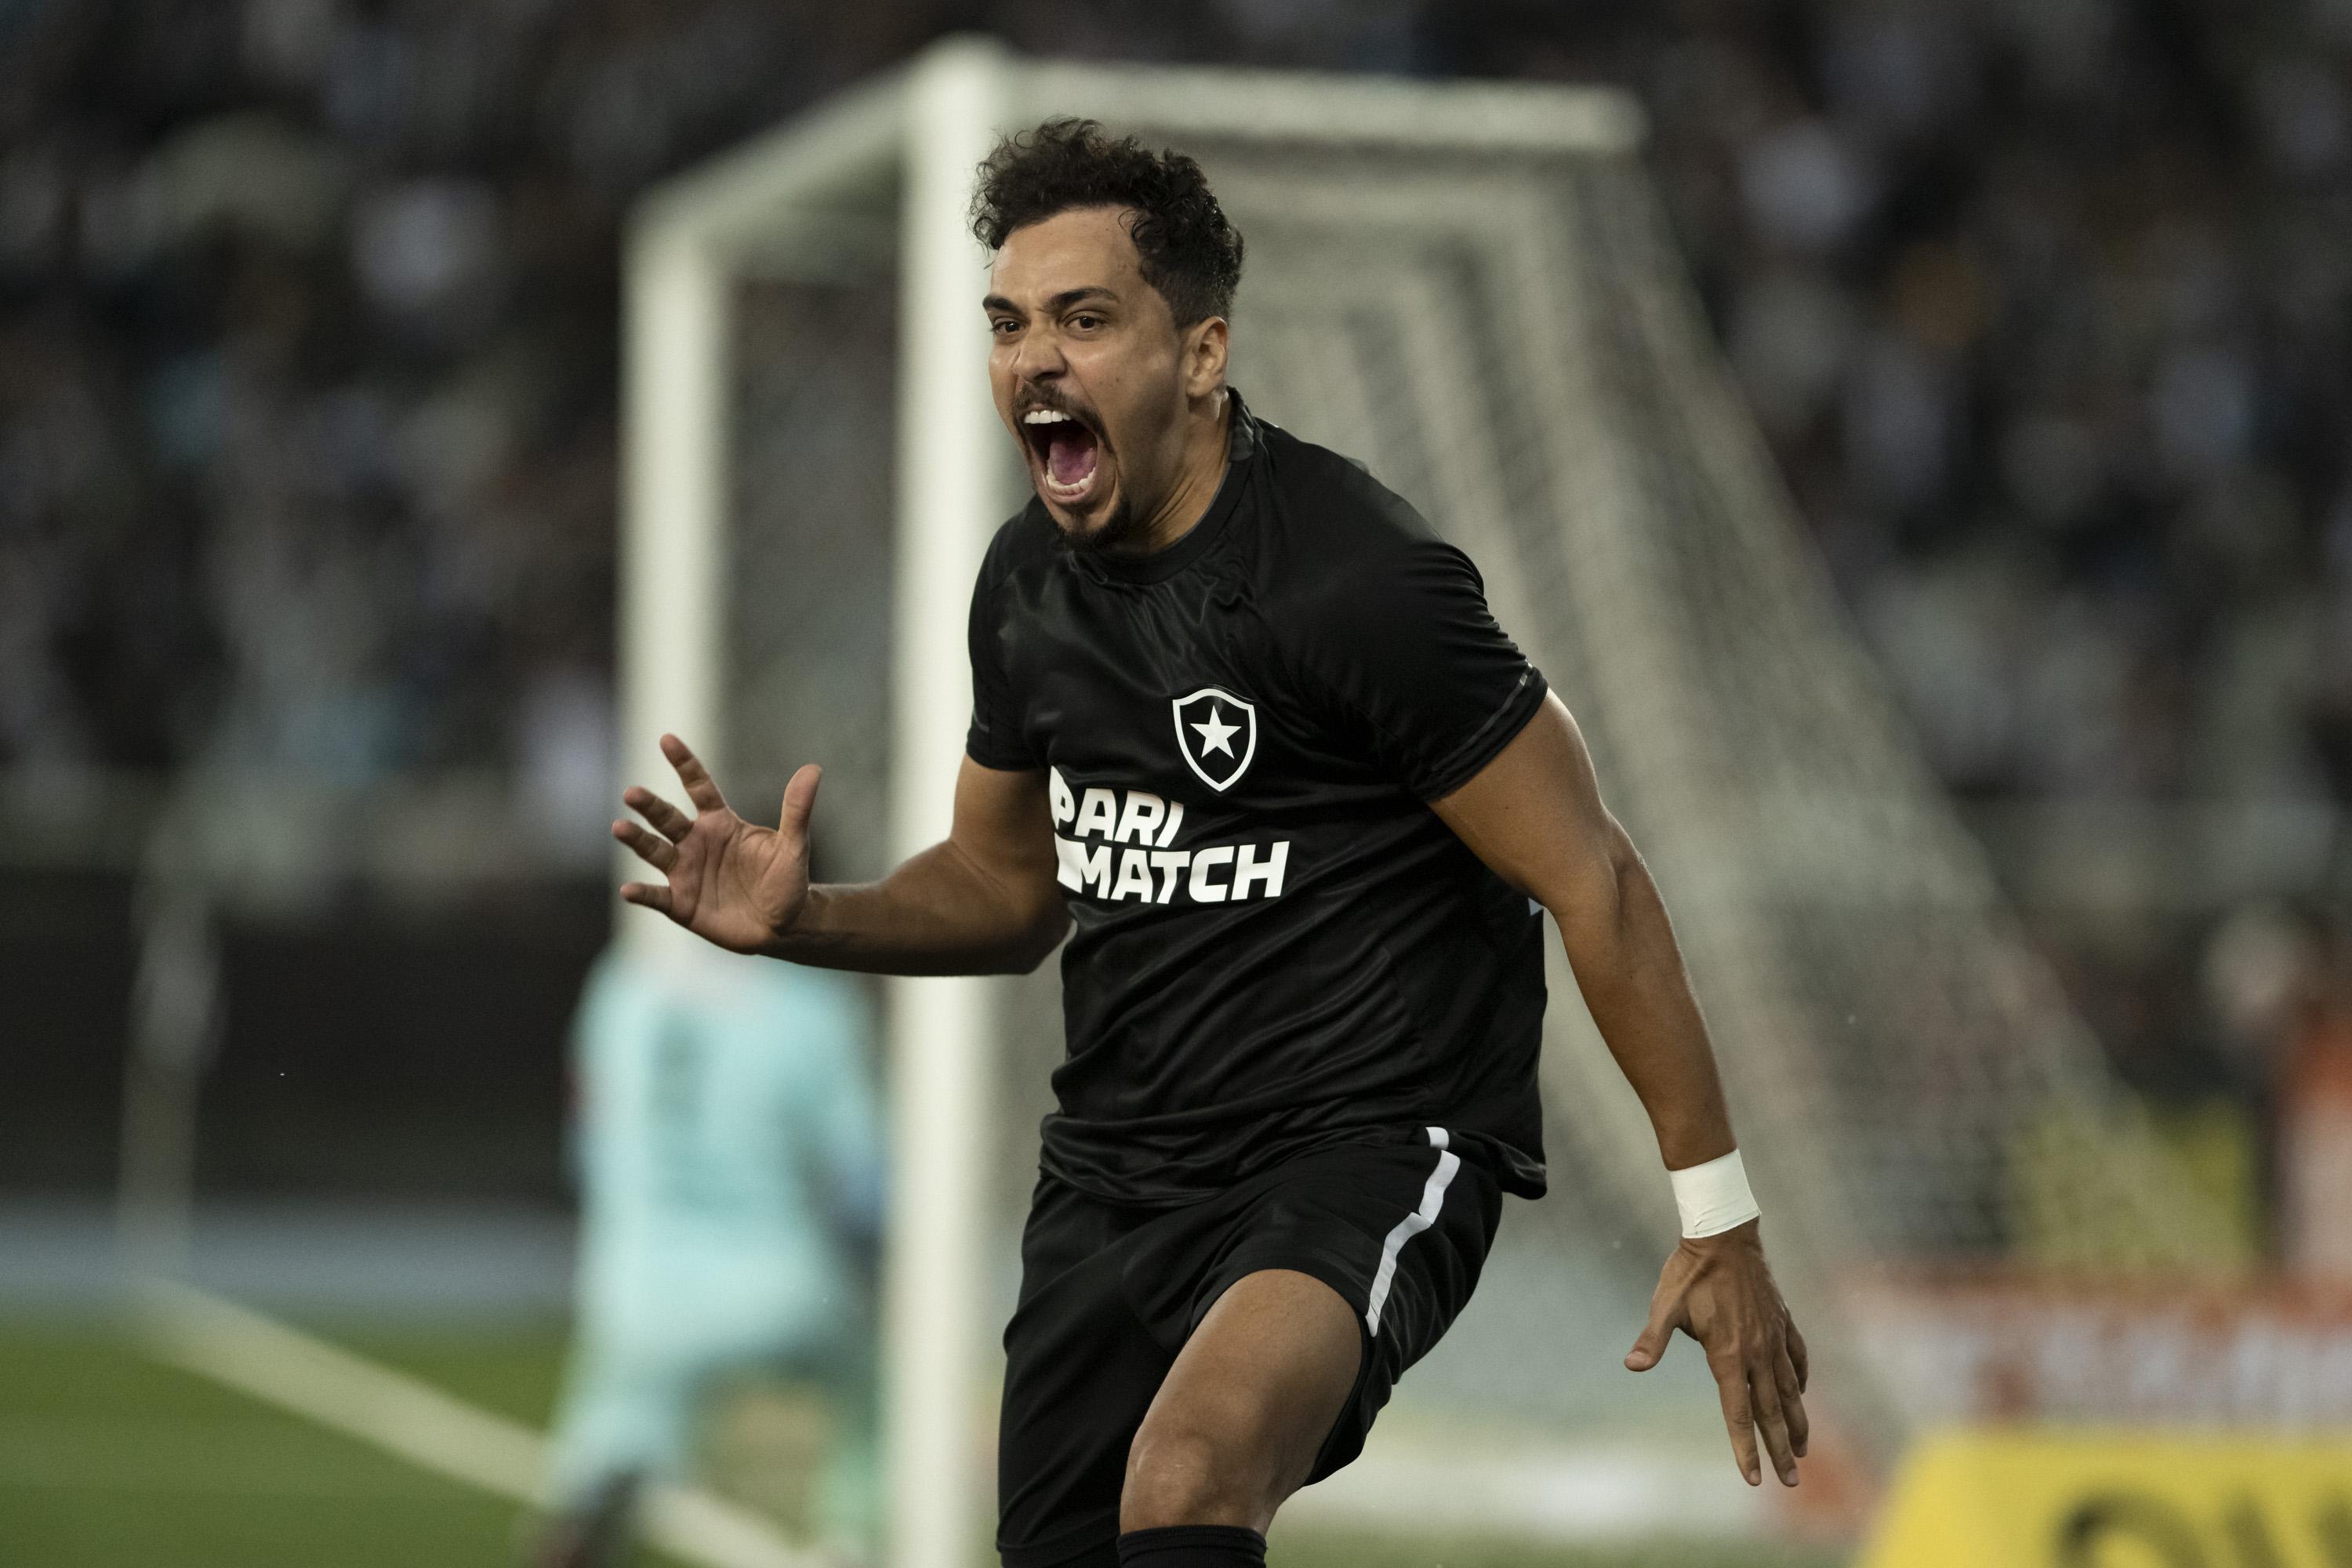 Contra o Goiás, Botafogo atingirá número histórico de público no Nilton  Santos em jogos pelo Brasileirão - Lance - R7 Futebol